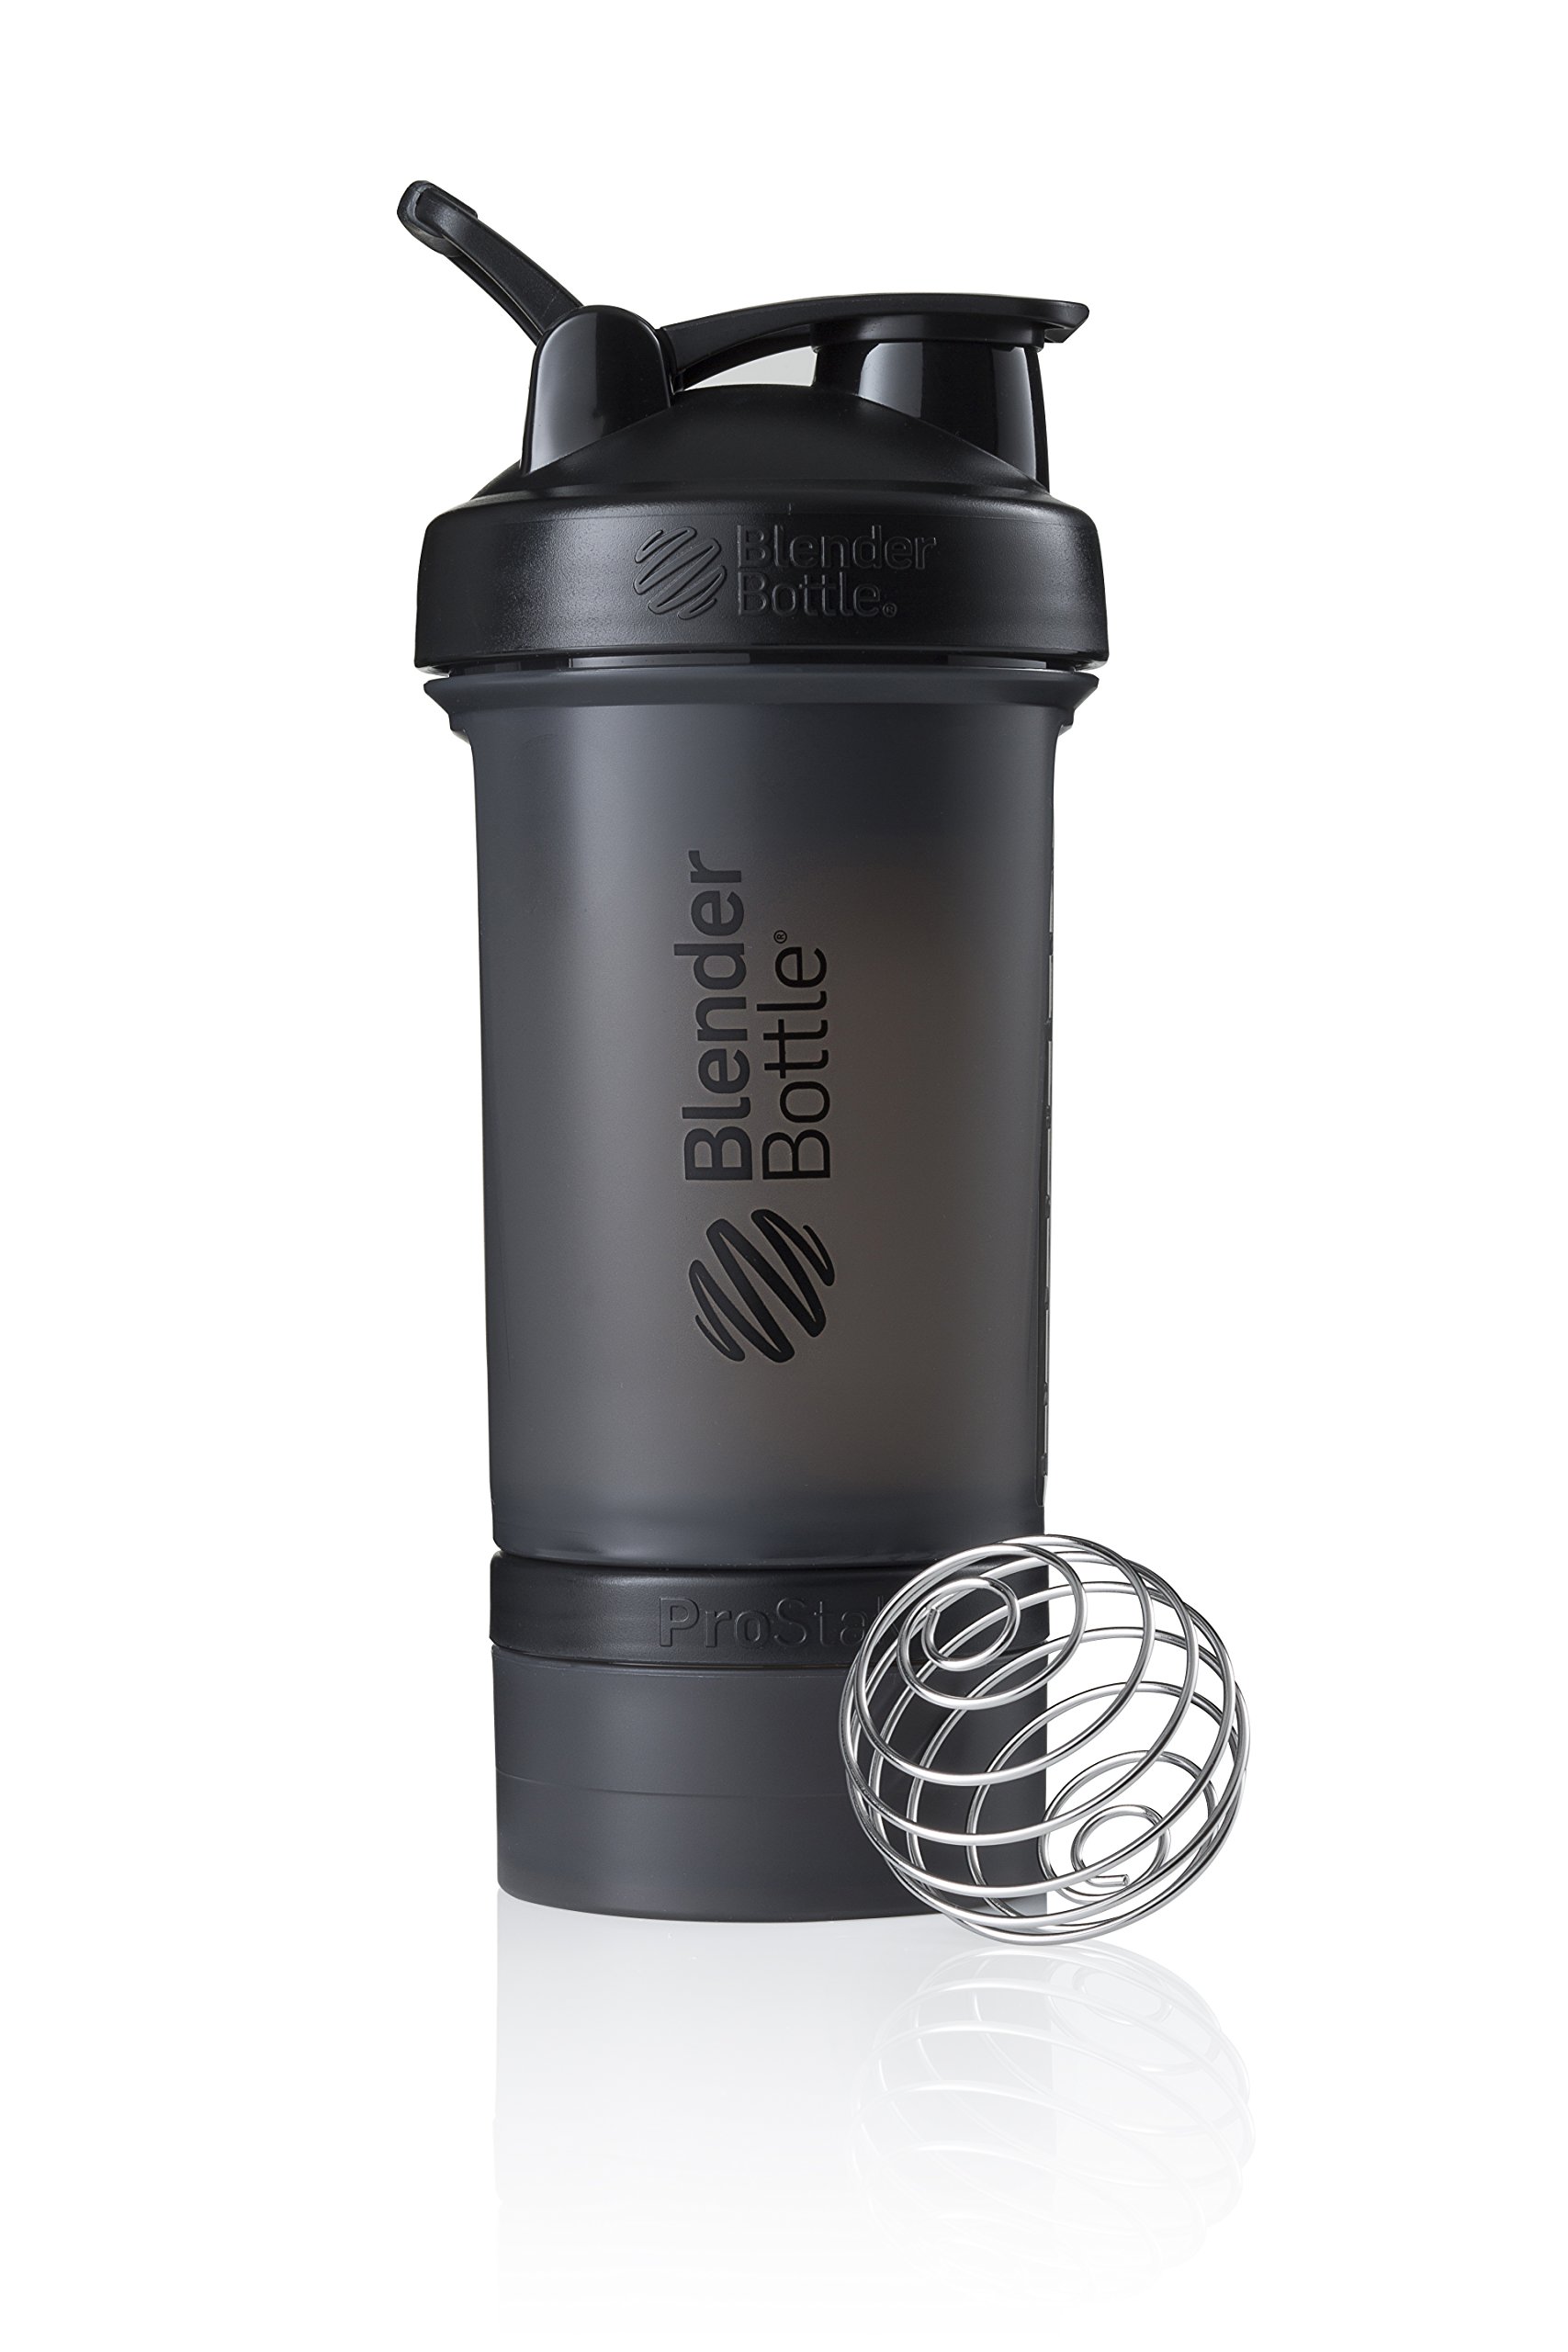 BlenderBottle ProStak Protein Shaker mit BlenderBall mit 2 Container 150ml und 100ml, 1 Pillenfach, optimal für Eiweiß, Diät und Fitness Shakes, skaliert bis 450ml, schwarz (650ml)